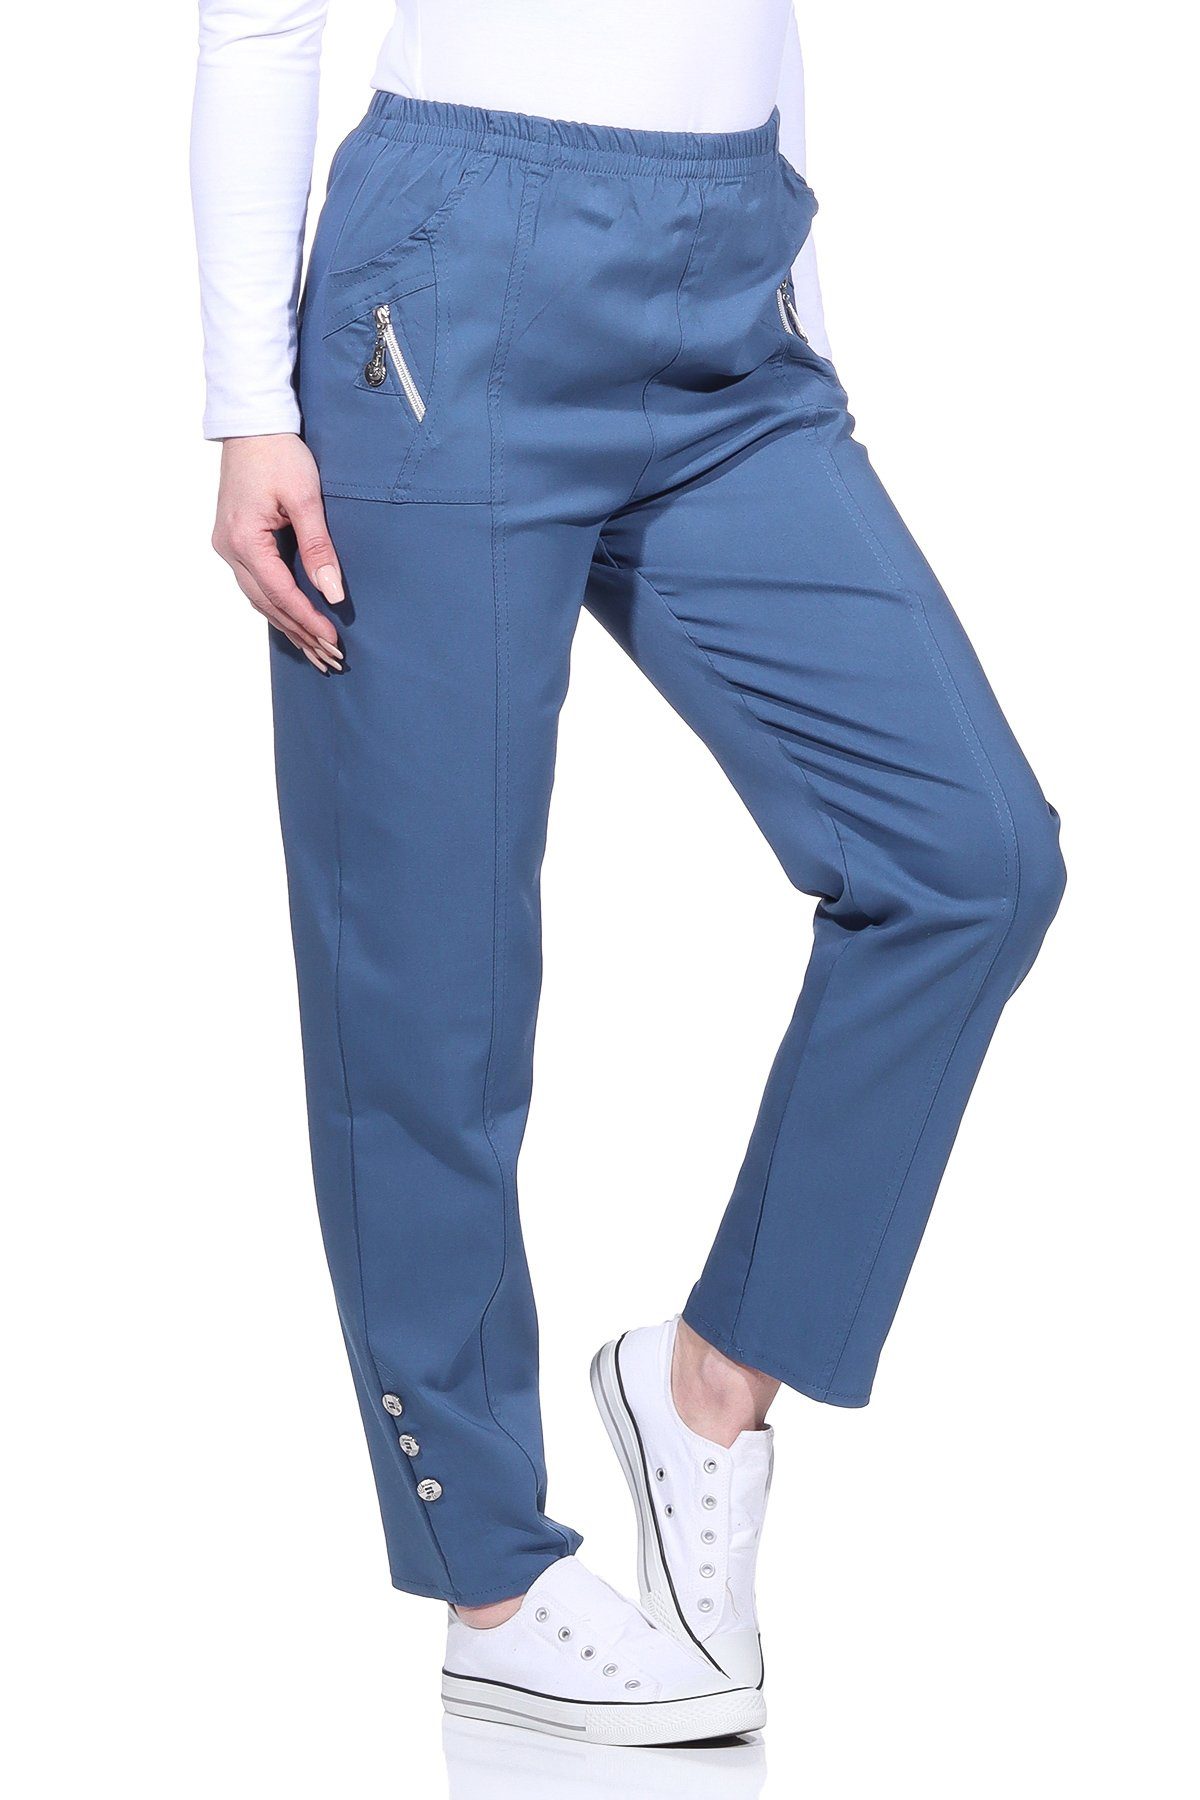 Aurela Damenmode Schlupfhose Damen Sommerhose luftig leichte Freizeithose mit Stretch elastischer Bund, auch in Großen Größen, Casual, Basic Jeans